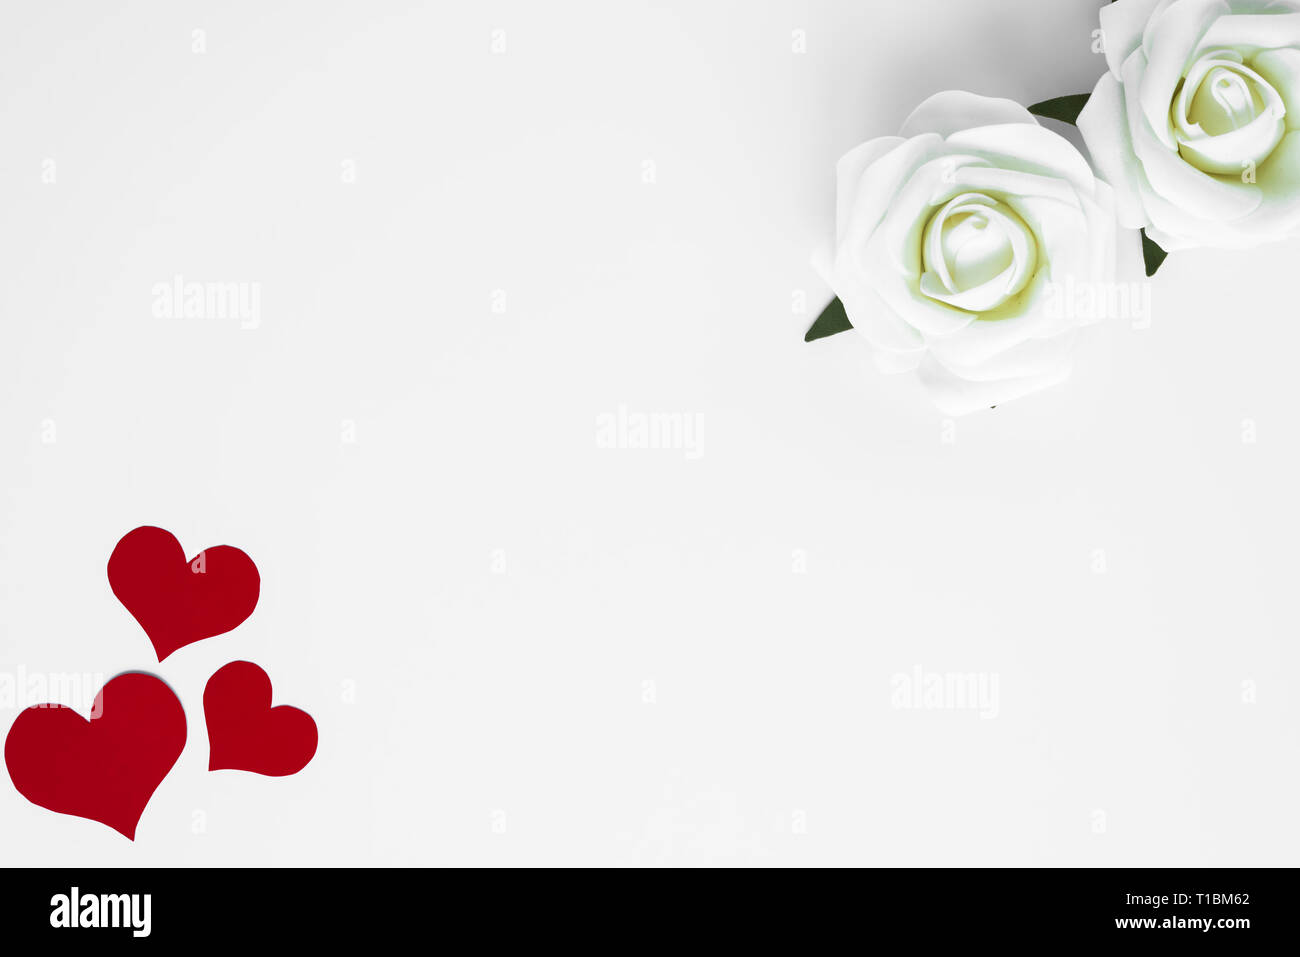 Romantisch und minimalistisch aus roten Herzen und reinen weißen Rosen auf weißem Hintergrund mit Kopie Raum für Happy Valentines Grüße eingestellt. Mütter oder W Stockfoto